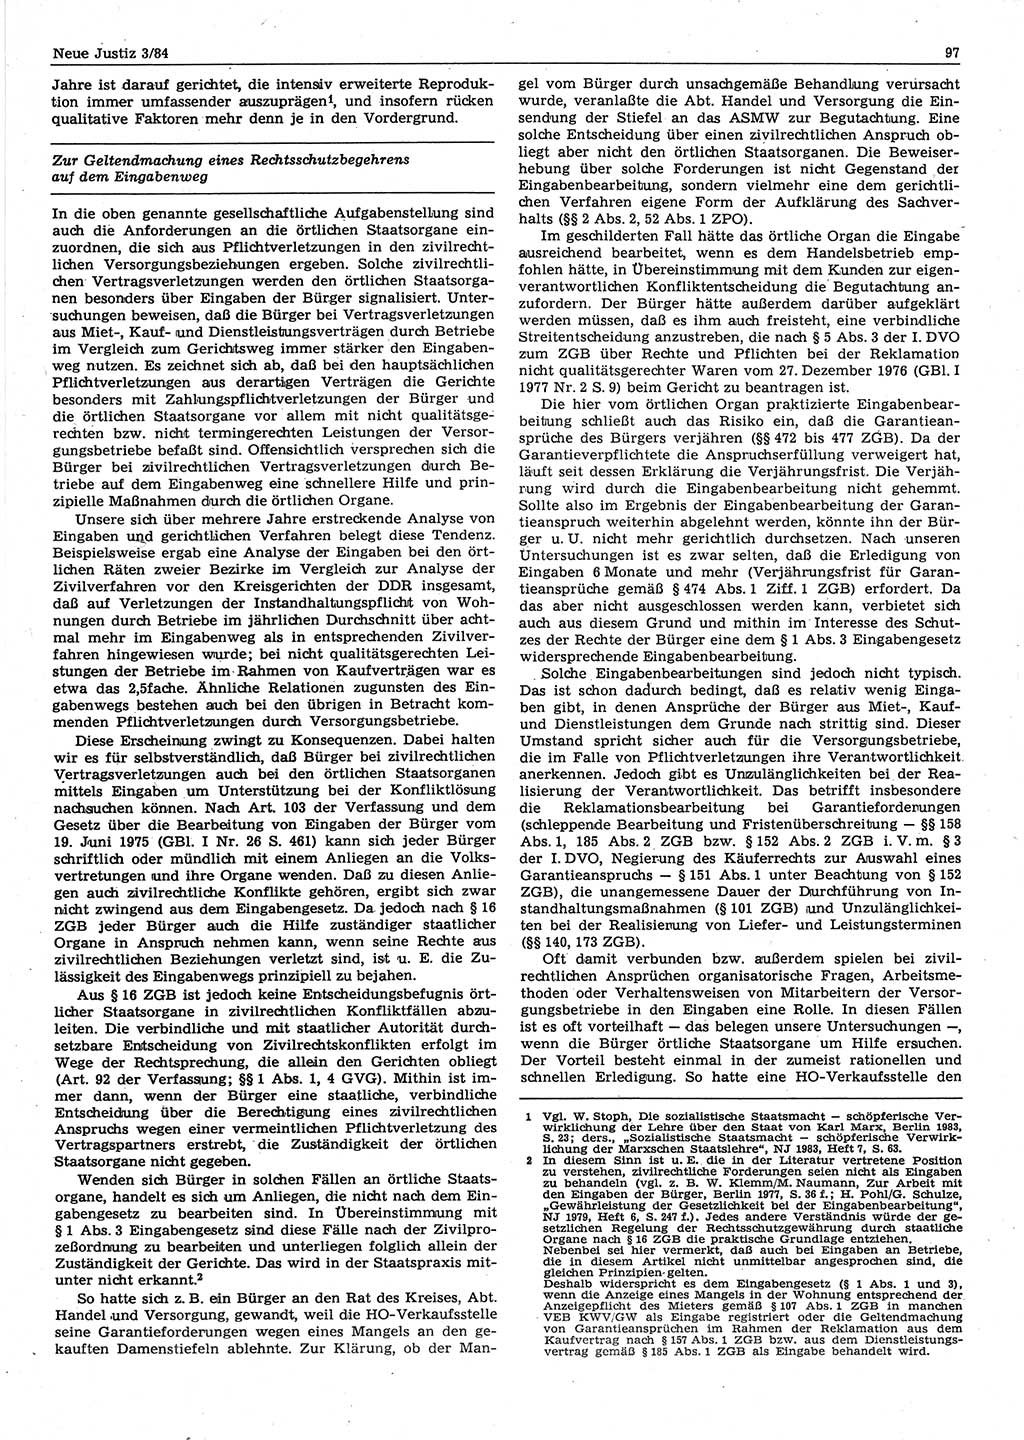 Neue Justiz (NJ), Zeitschrift für sozialistisches Recht und Gesetzlichkeit [Deutsche Demokratische Republik (DDR)], 38. Jahrgang 1984, Seite 97 (NJ DDR 1984, S. 97)